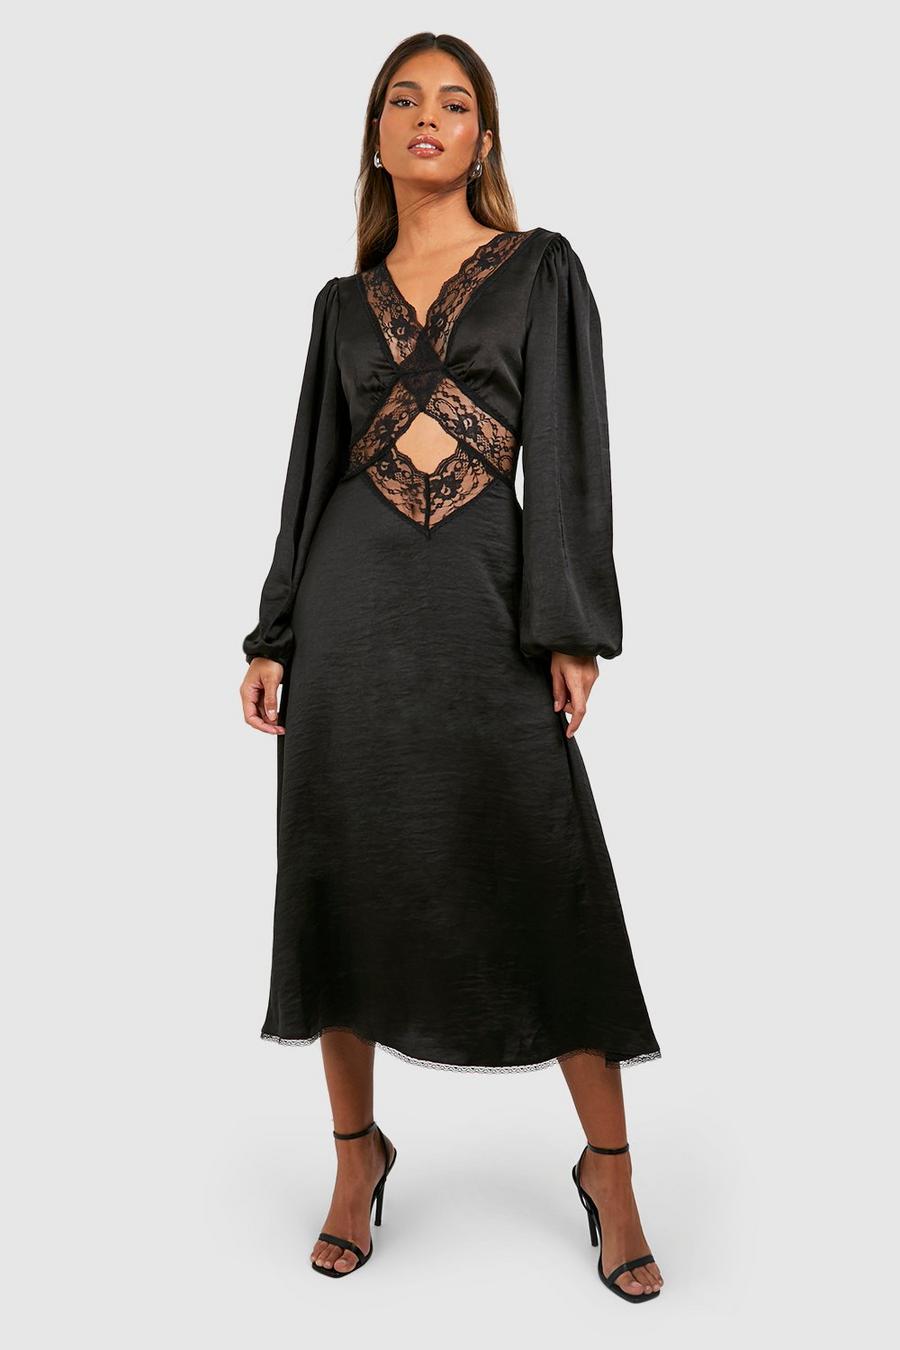 Black Midiklänning i satin med spetsdetaljer och blusärm